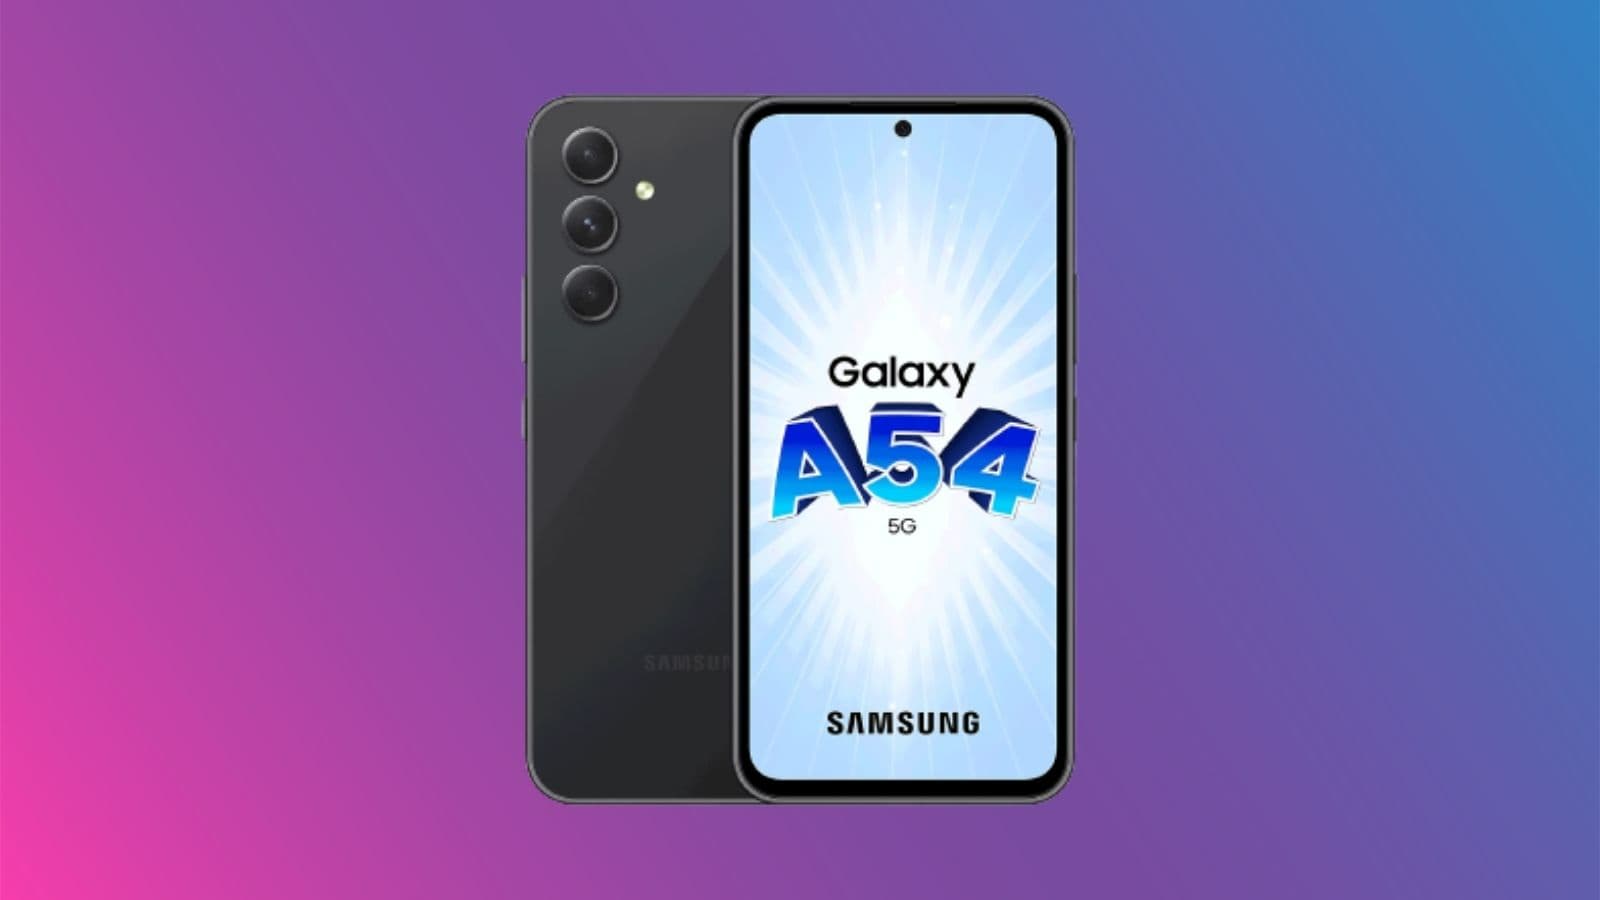 changez de smartphone avec cette offre sur le samsung galaxy a54